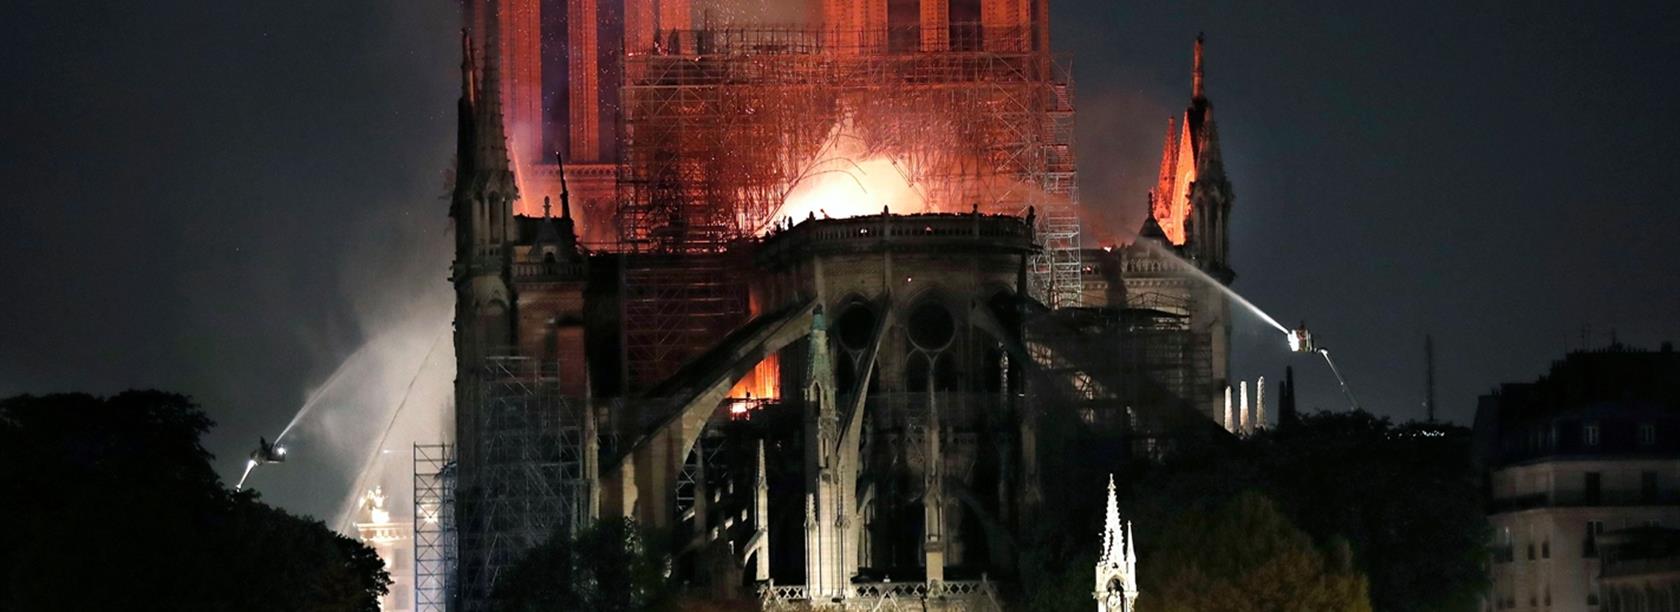 بریده ای از رمان گوژپشت نوتردام ؛ عاقبت خشونت فرانسوی ، آتش در دامن کلیسا !